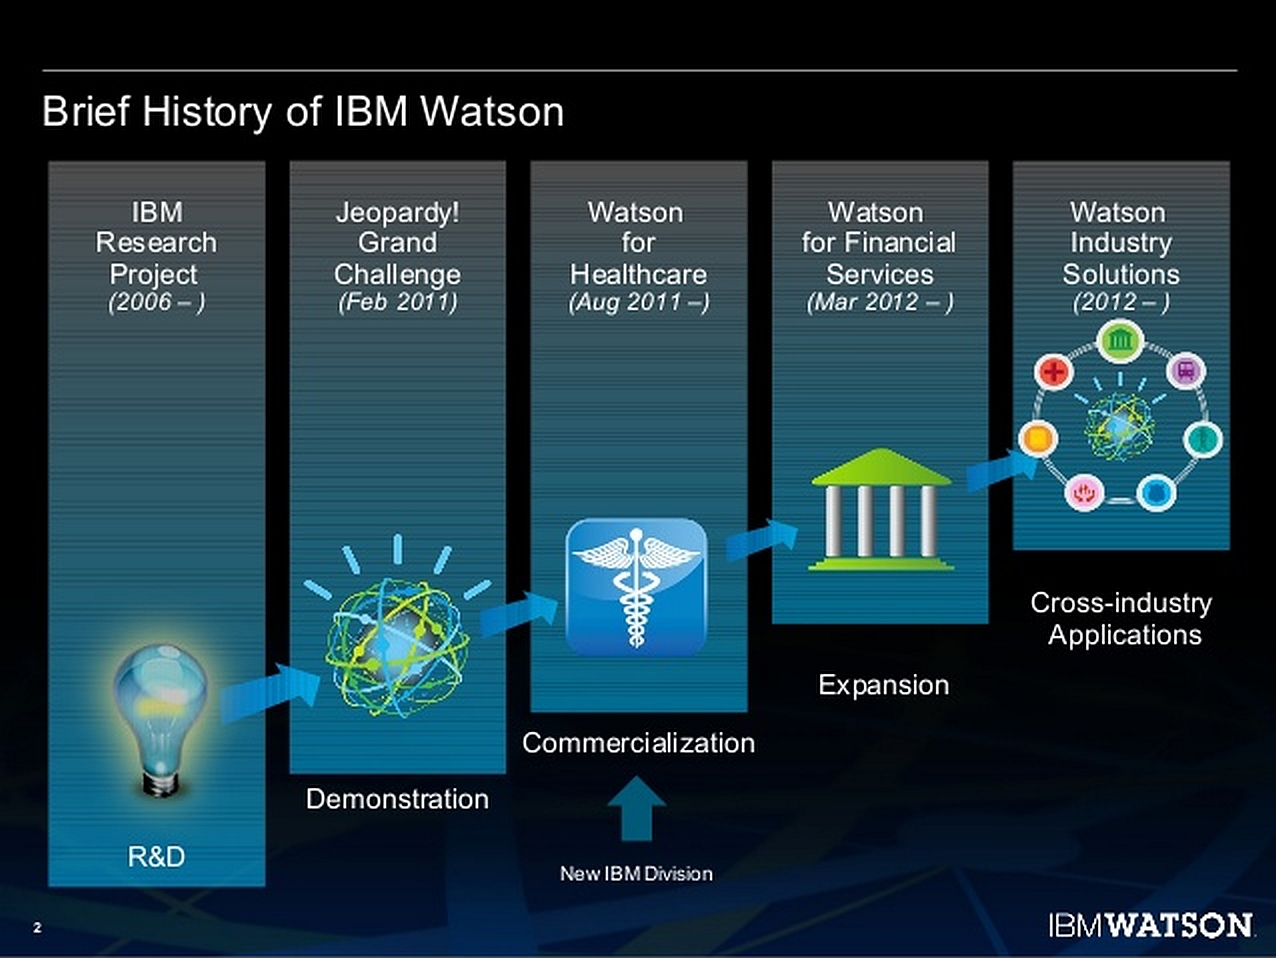 IMB Watson startete als Forschungsprojekt bereits im Jahr 2006. Als Vorgänger kann Deep Blue verstanden werden, der schon ab 1996 verfügbar war. (Bild: IBM Deutschland GmbH)